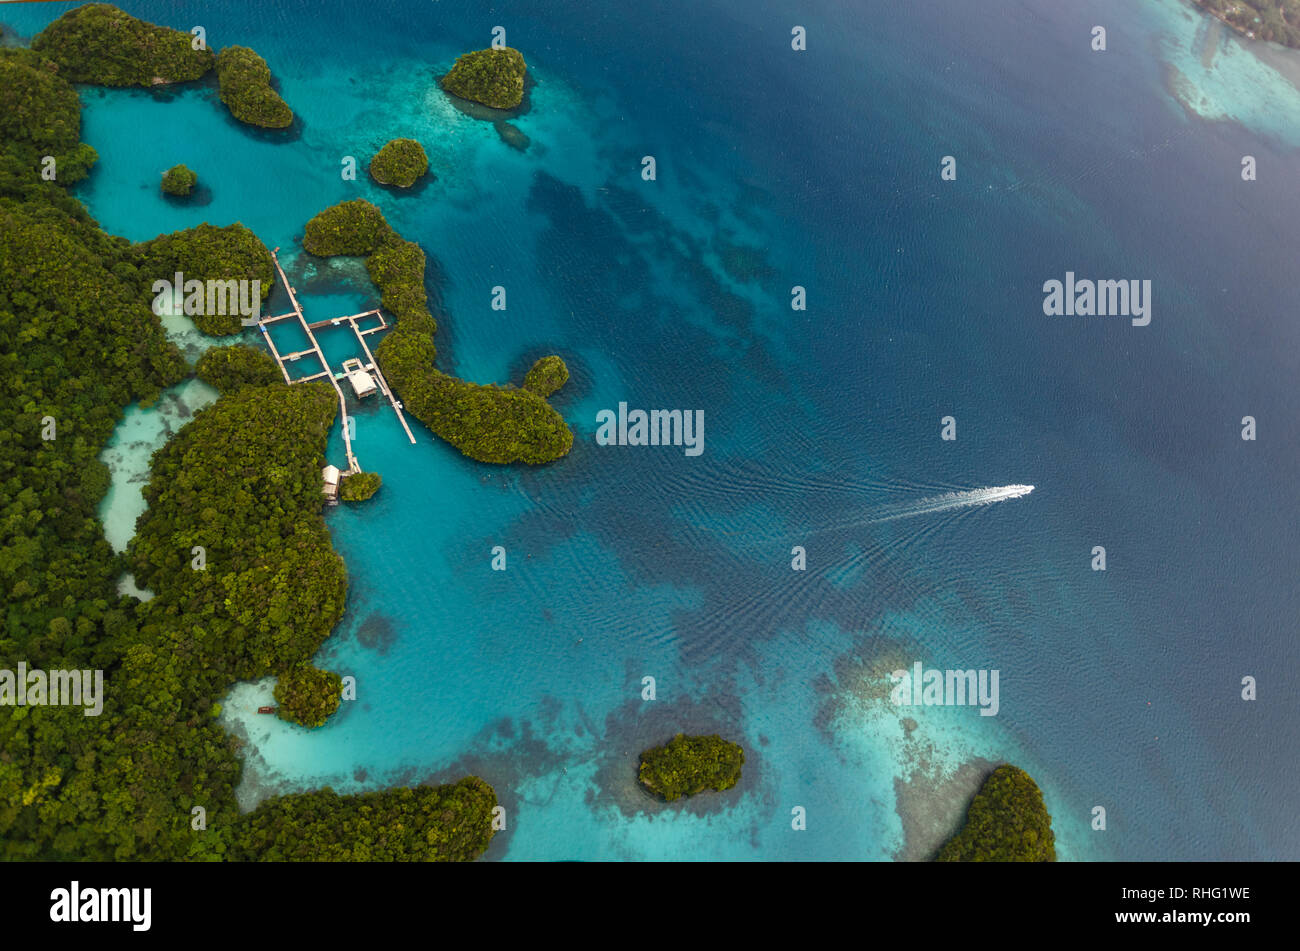 Luftbild des Schiffs square Docks in Gruppe von kleinen südpazifischen Inseln mit üppiger Vegetation und Korallenriffe in türkis Meer bedeckt Stockfoto